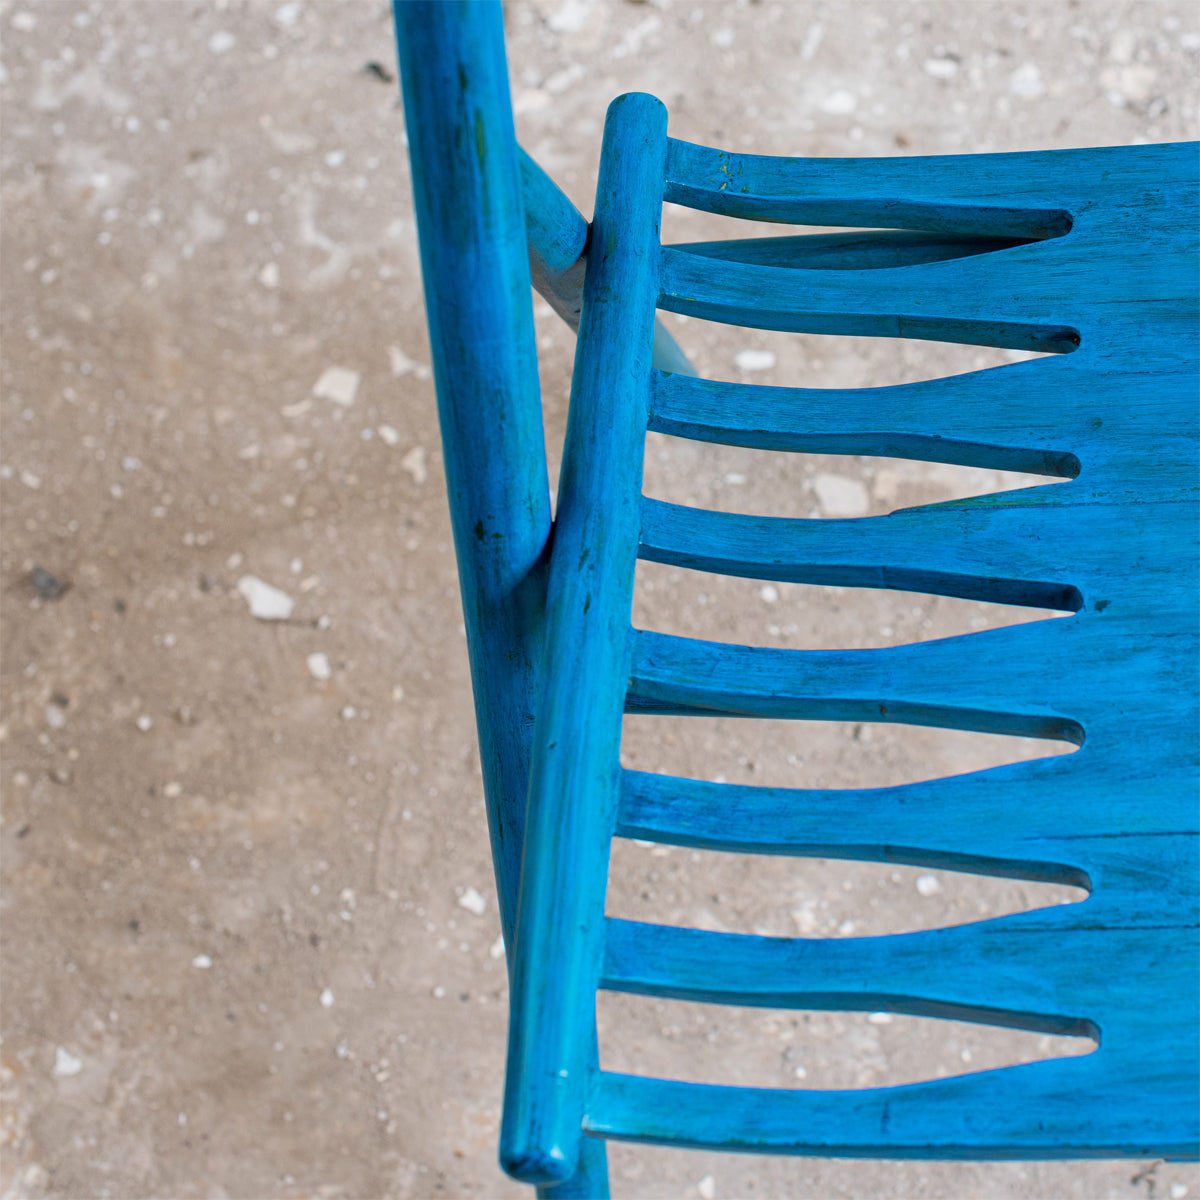 Sawboo Chair - Blue